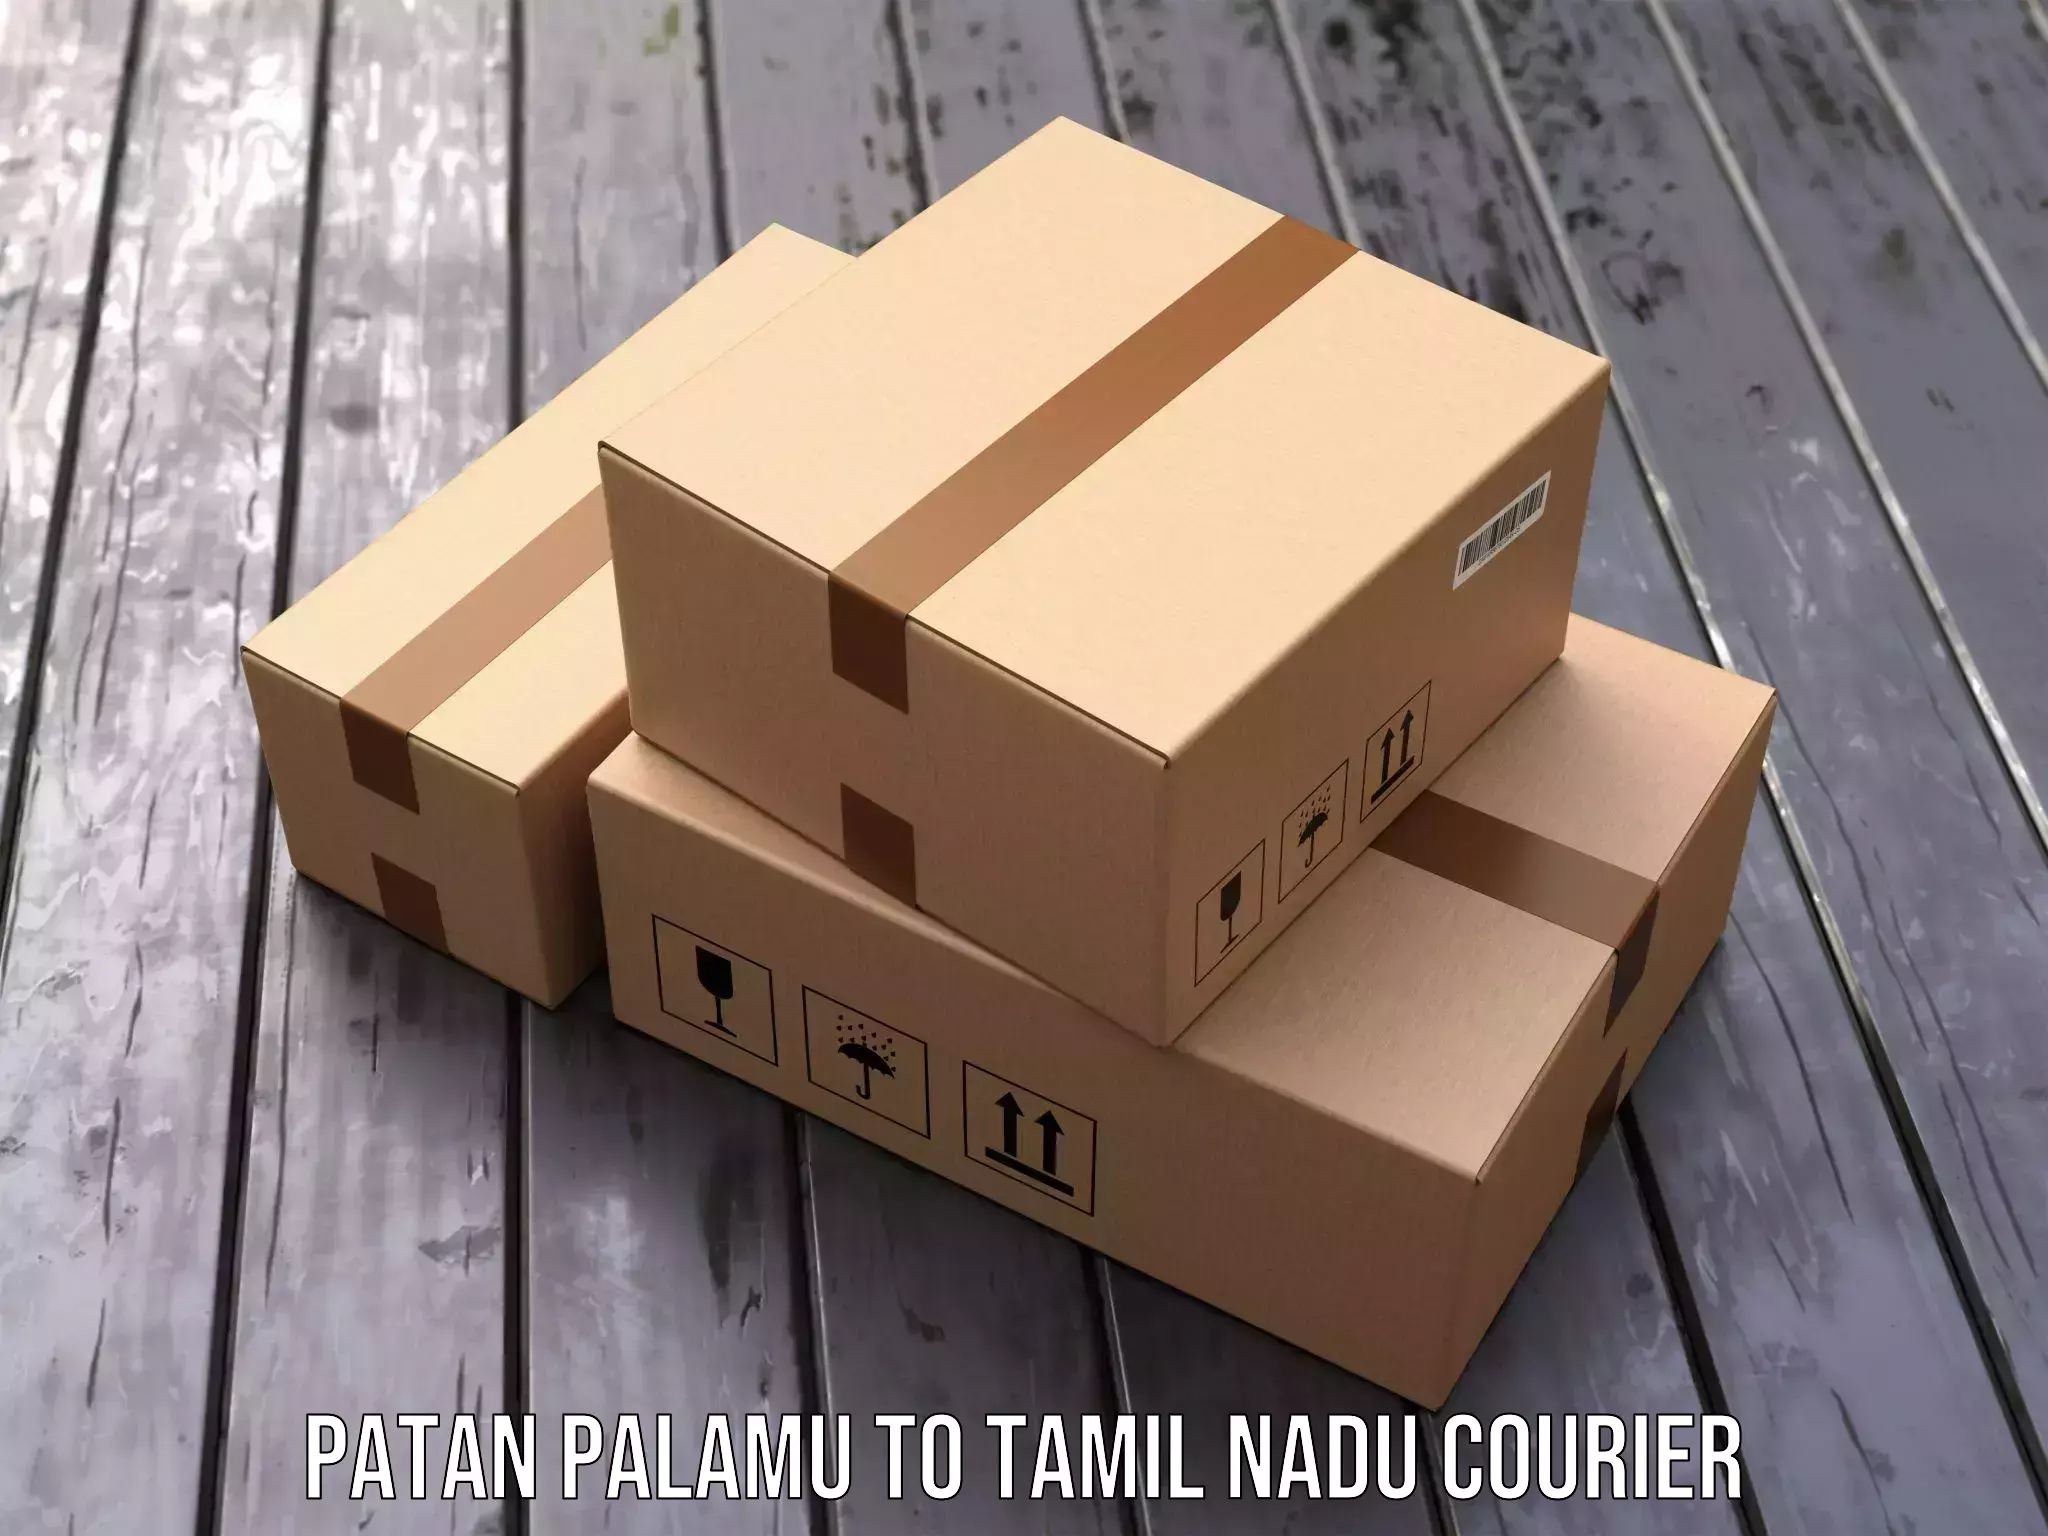 Dynamic courier operations Patan Palamu to Thiruvadanai